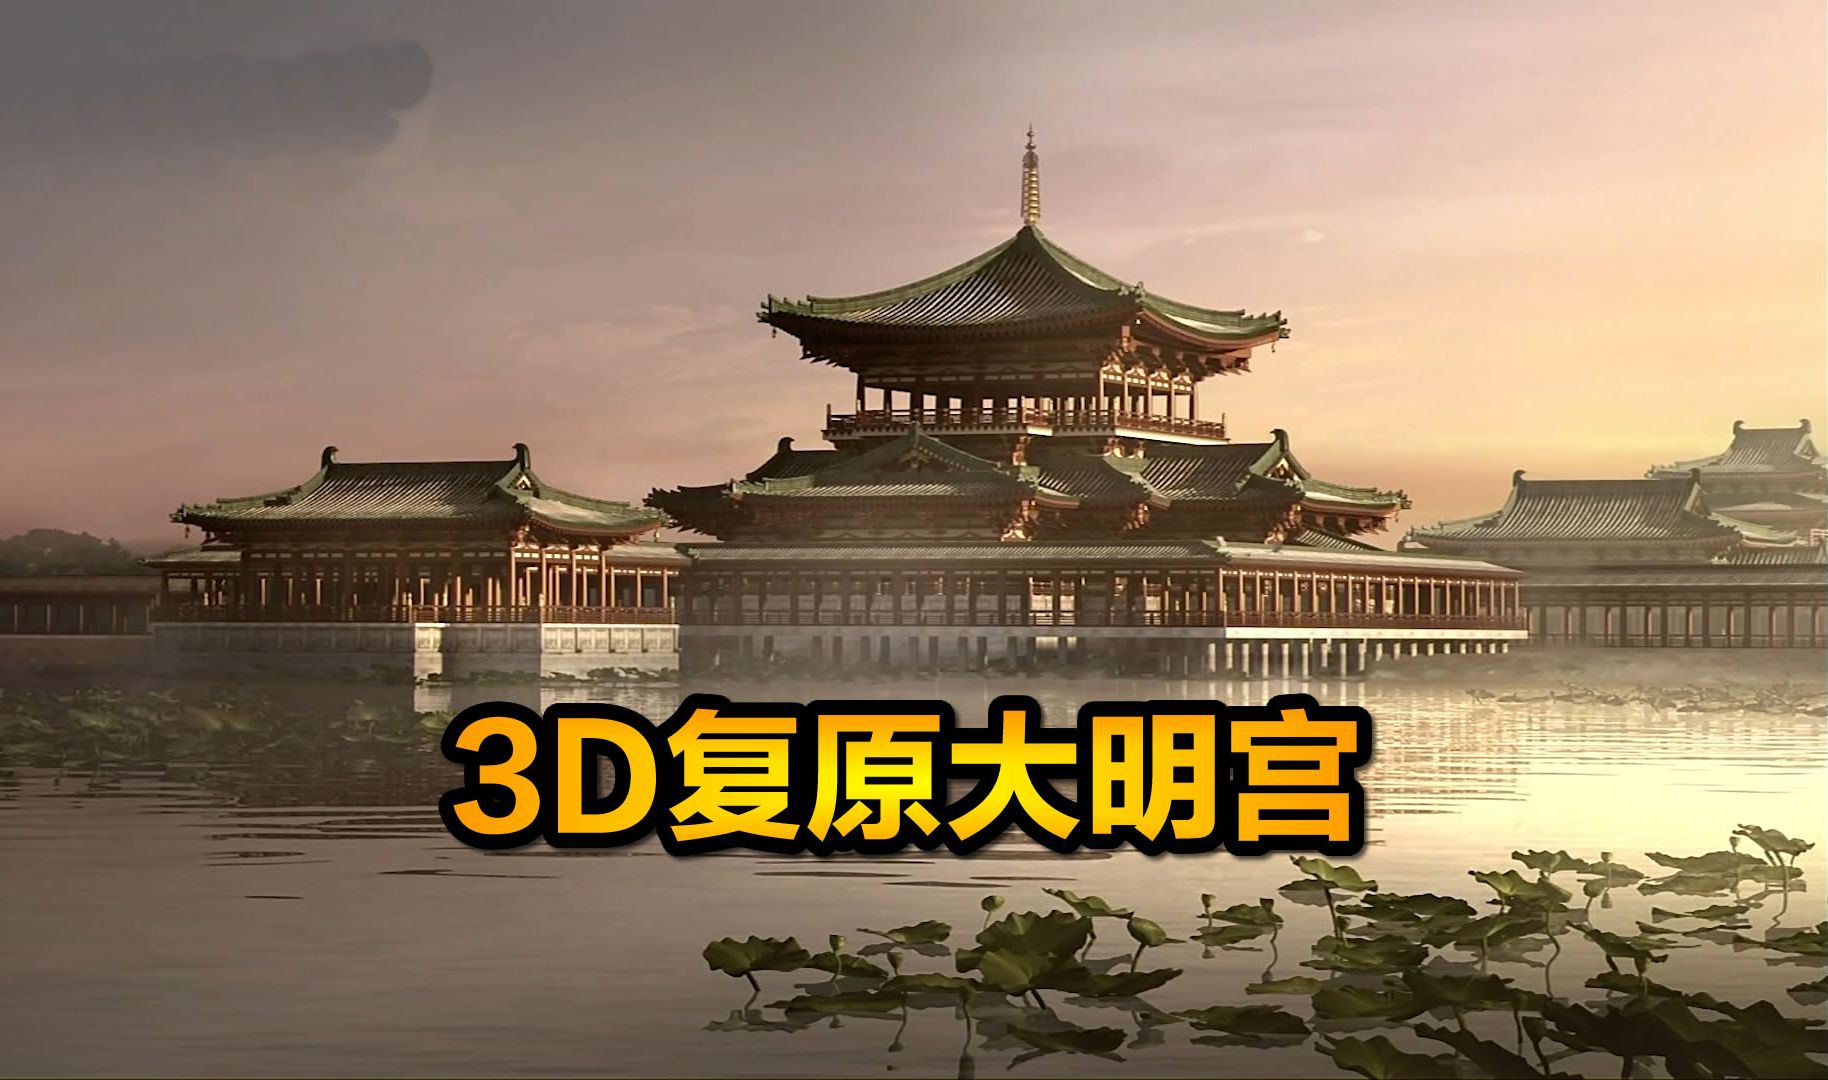 3d复原大明宫,恢宏壮观震撼人心,不愧是大唐帝国的皇宫,纪录片